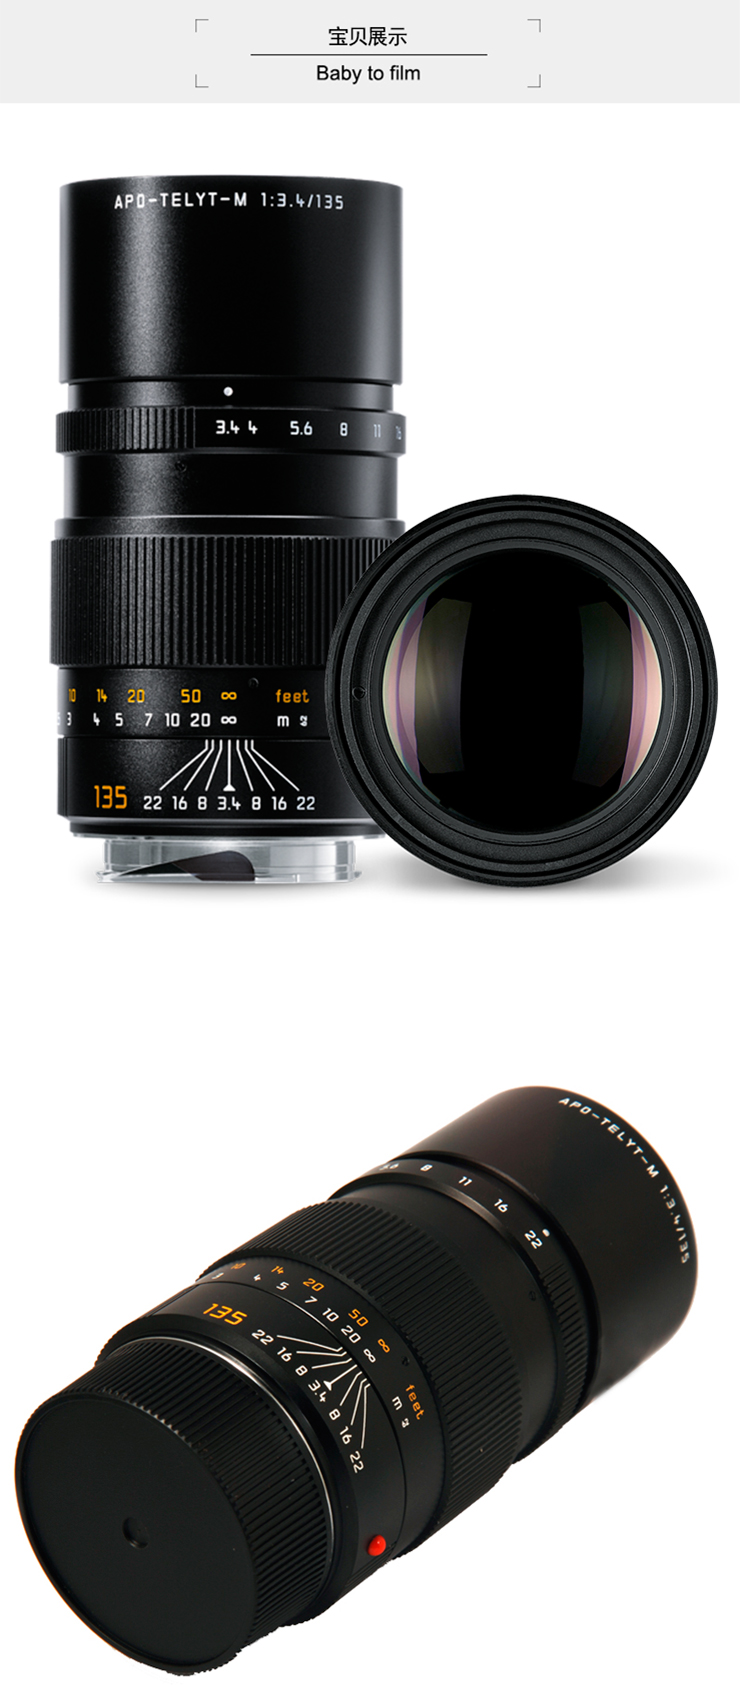 徕卡(Leica)APO-TELYT-M 135mmf/3.4 长焦远射镜头 黑色11889